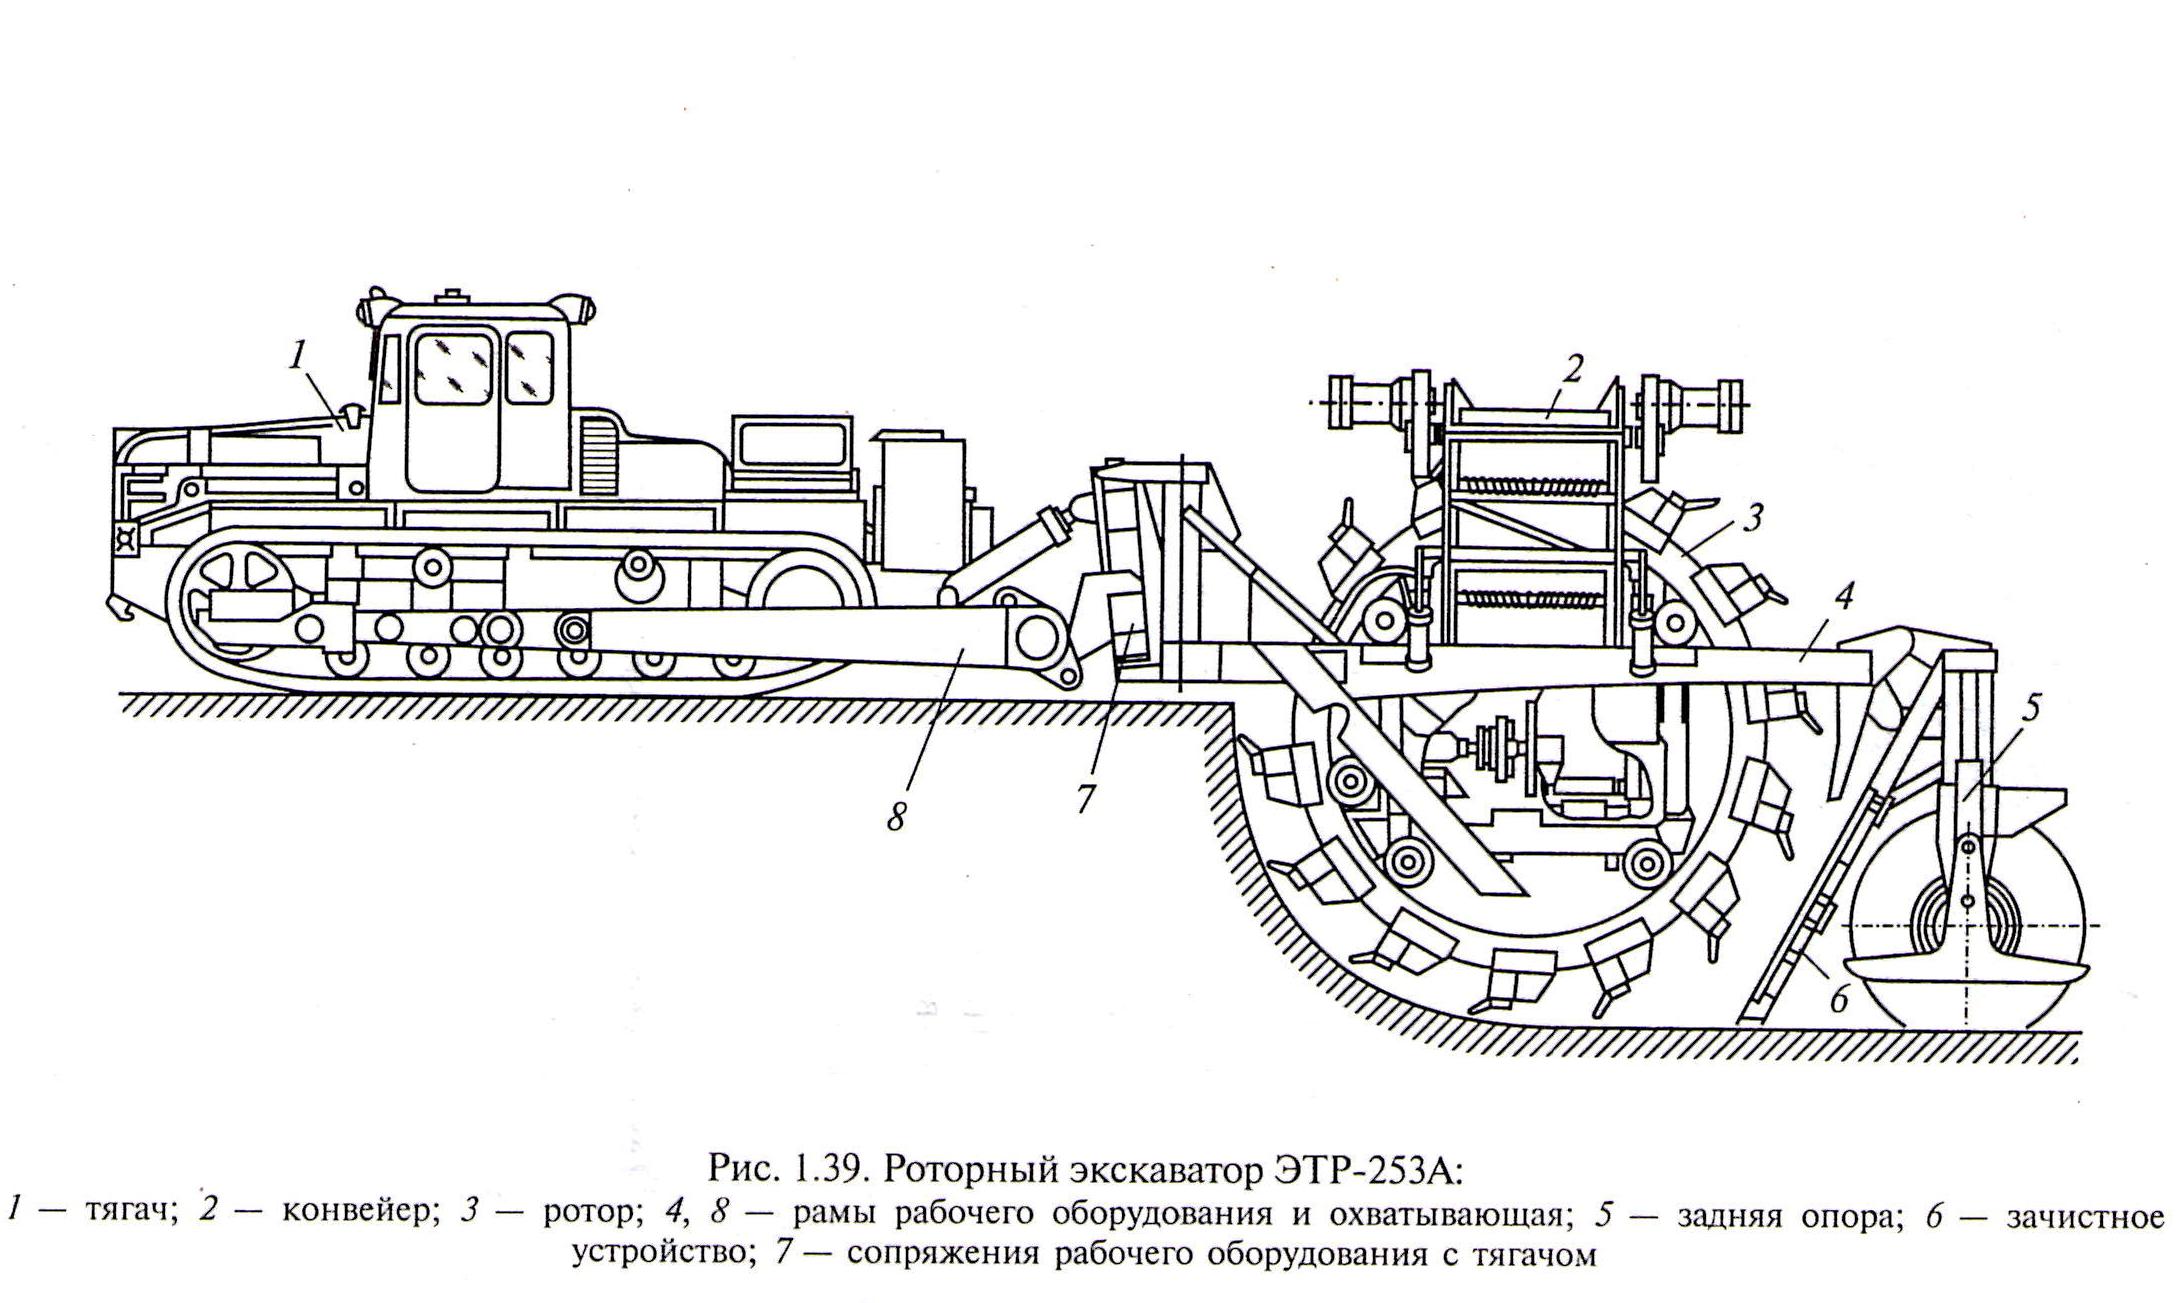 Экскаватор роторный ЭТР-224а